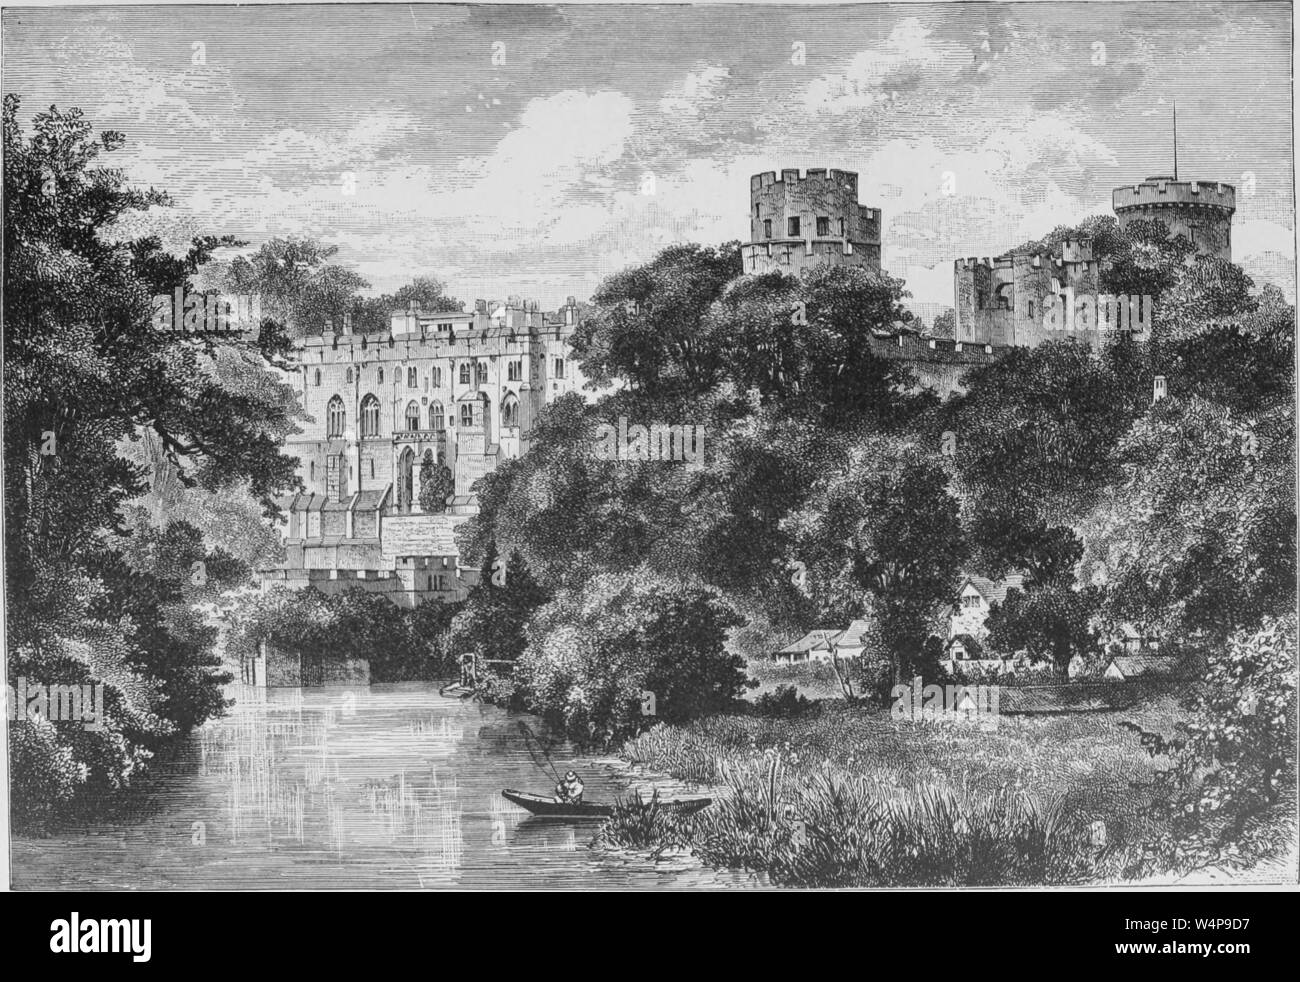 Incisione del Castello di Warwick nel Warwickshire, Inghilterra, dal libro "La terra e i suoi abitanti " da Elisee Reclus, 1881. La cortesia Internet Archive. () Foto Stock